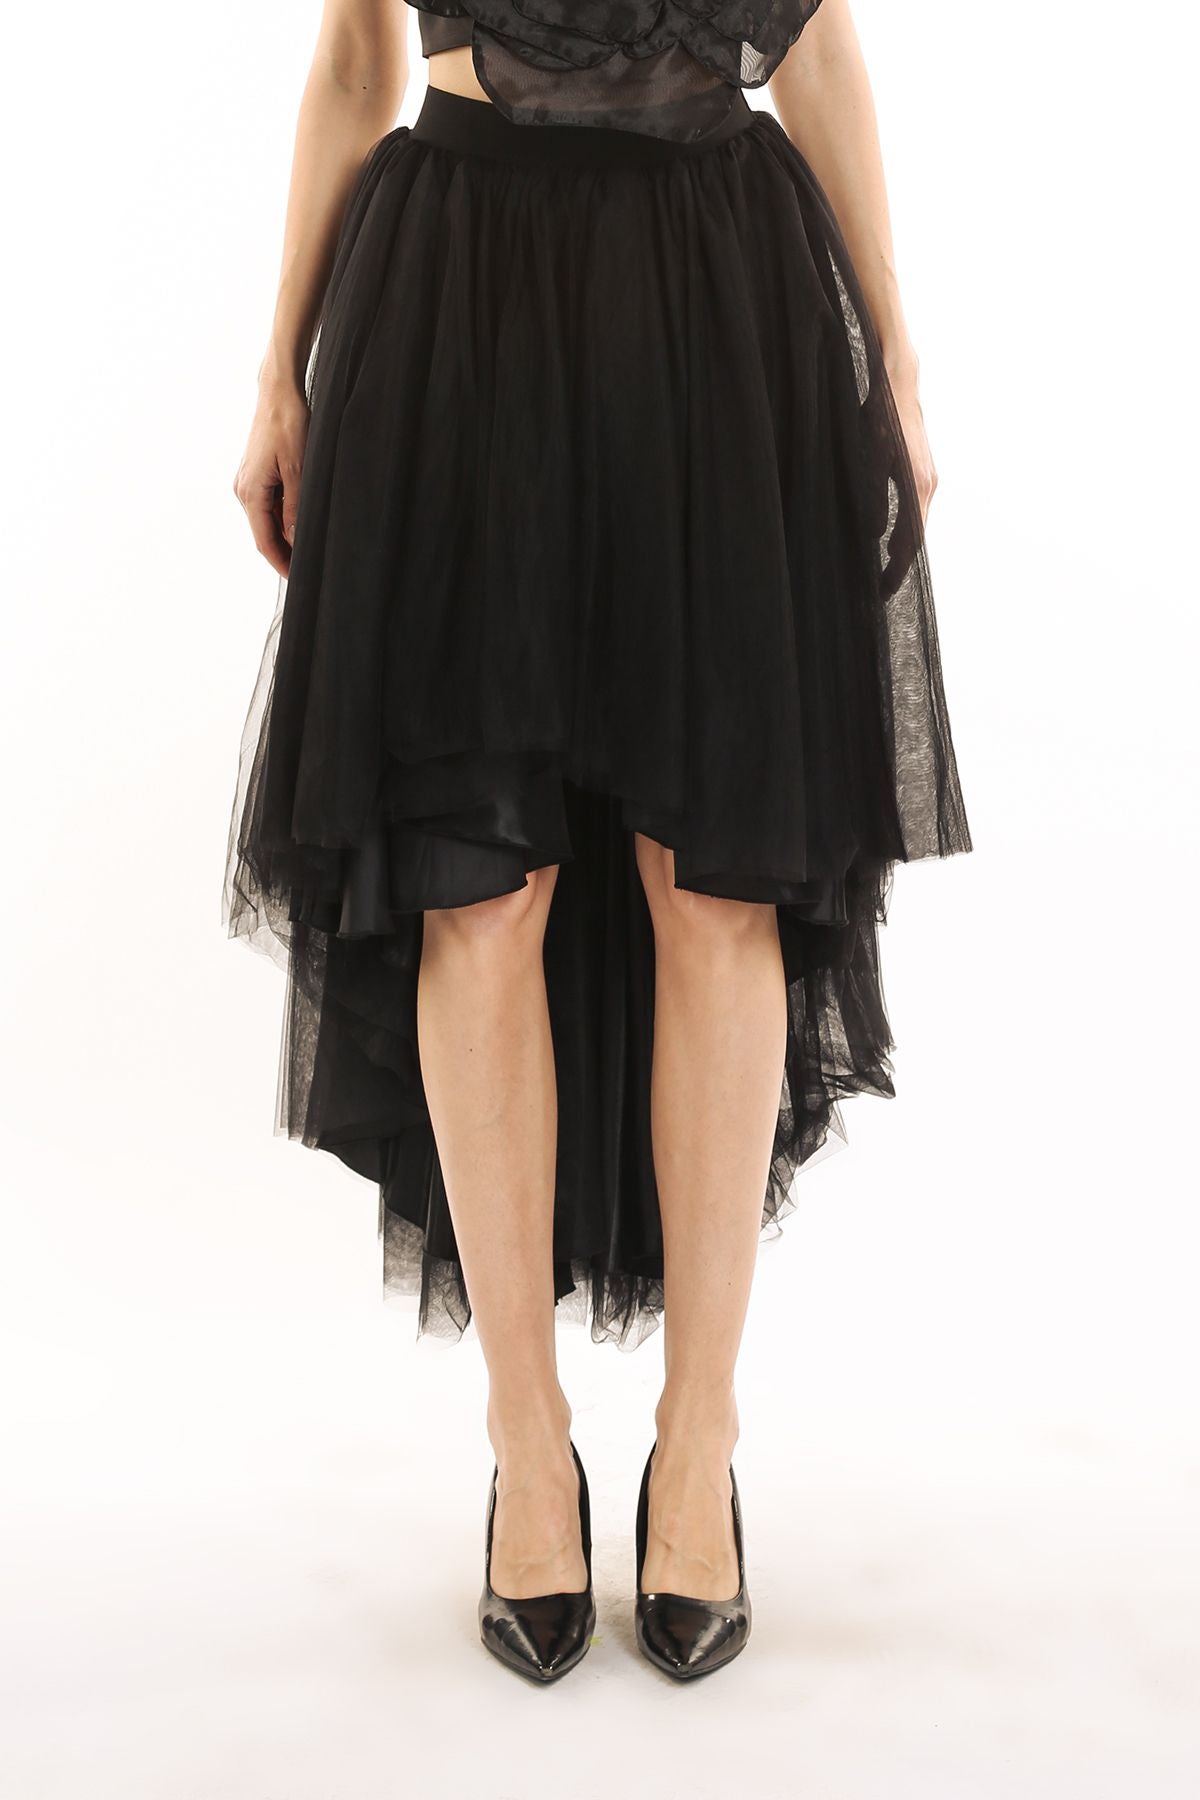 Black Tulle High/Low Skirt